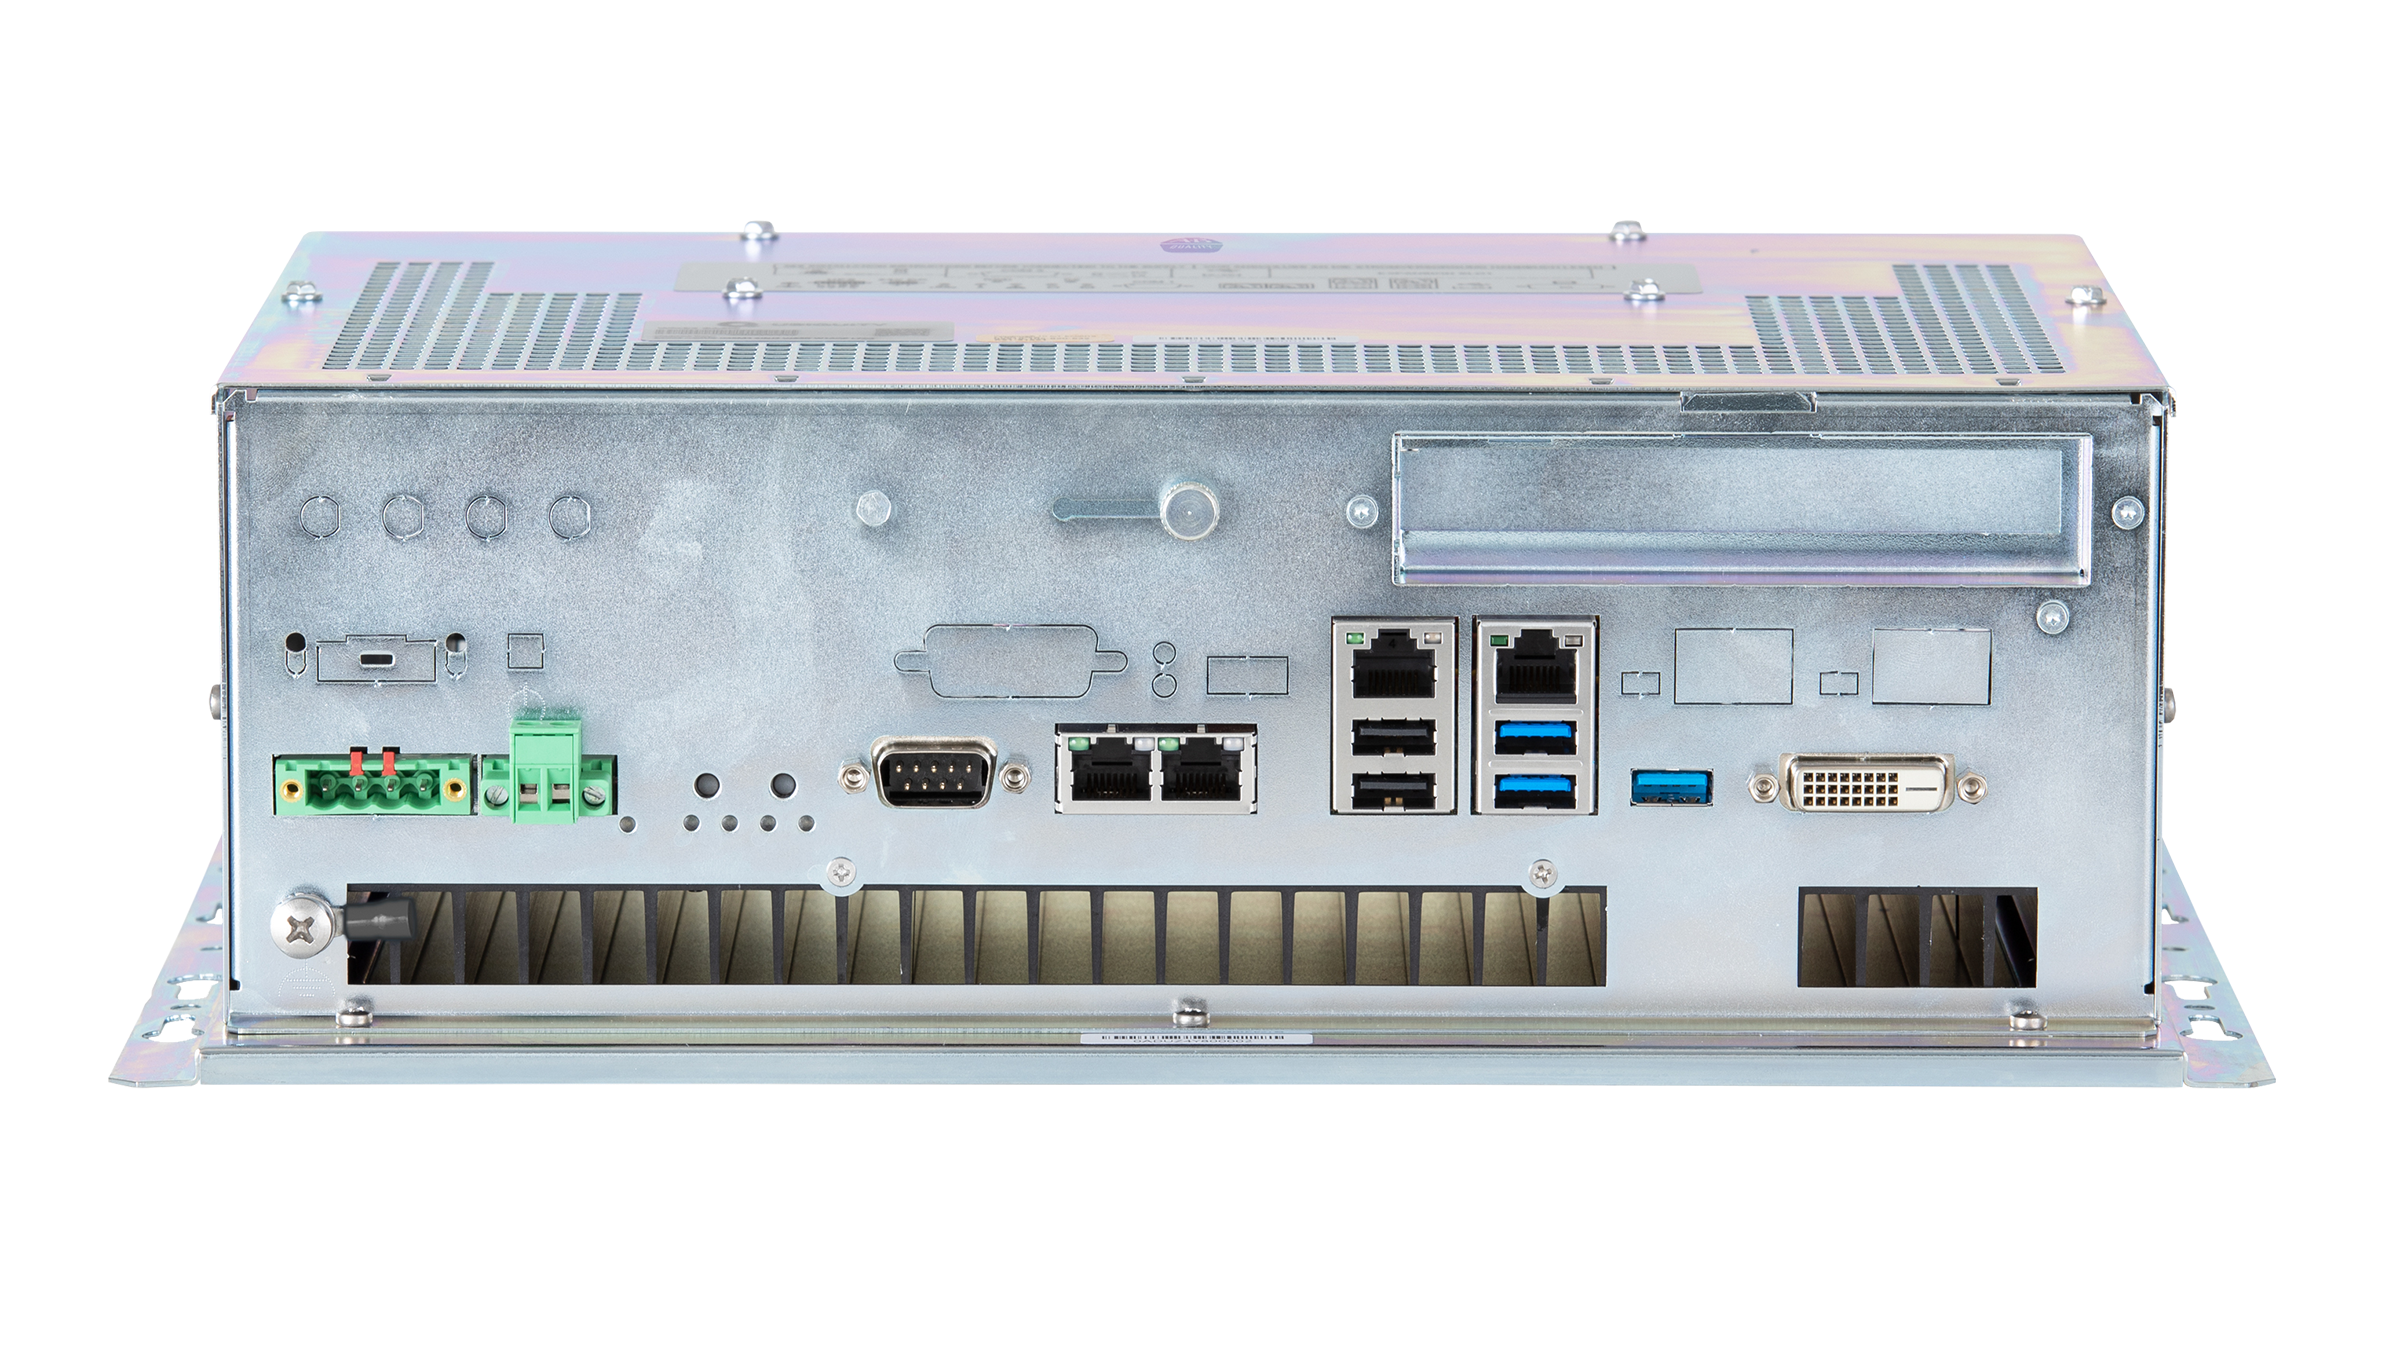 Bodenansicht des Box-PC der ASEM-6300B-Intel-Core-i-Klasse mit Wandmontage, welche die Ports zeigt. Hintergrund ist weiß